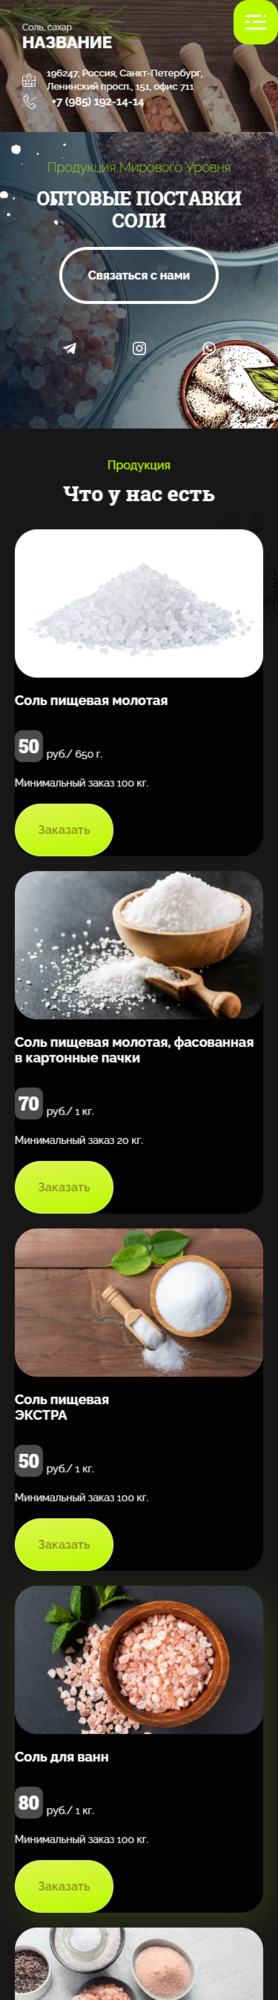 Готовый Сайт-Бизнес № 3187169 - Соль, продажа соли (Мобильная версия)